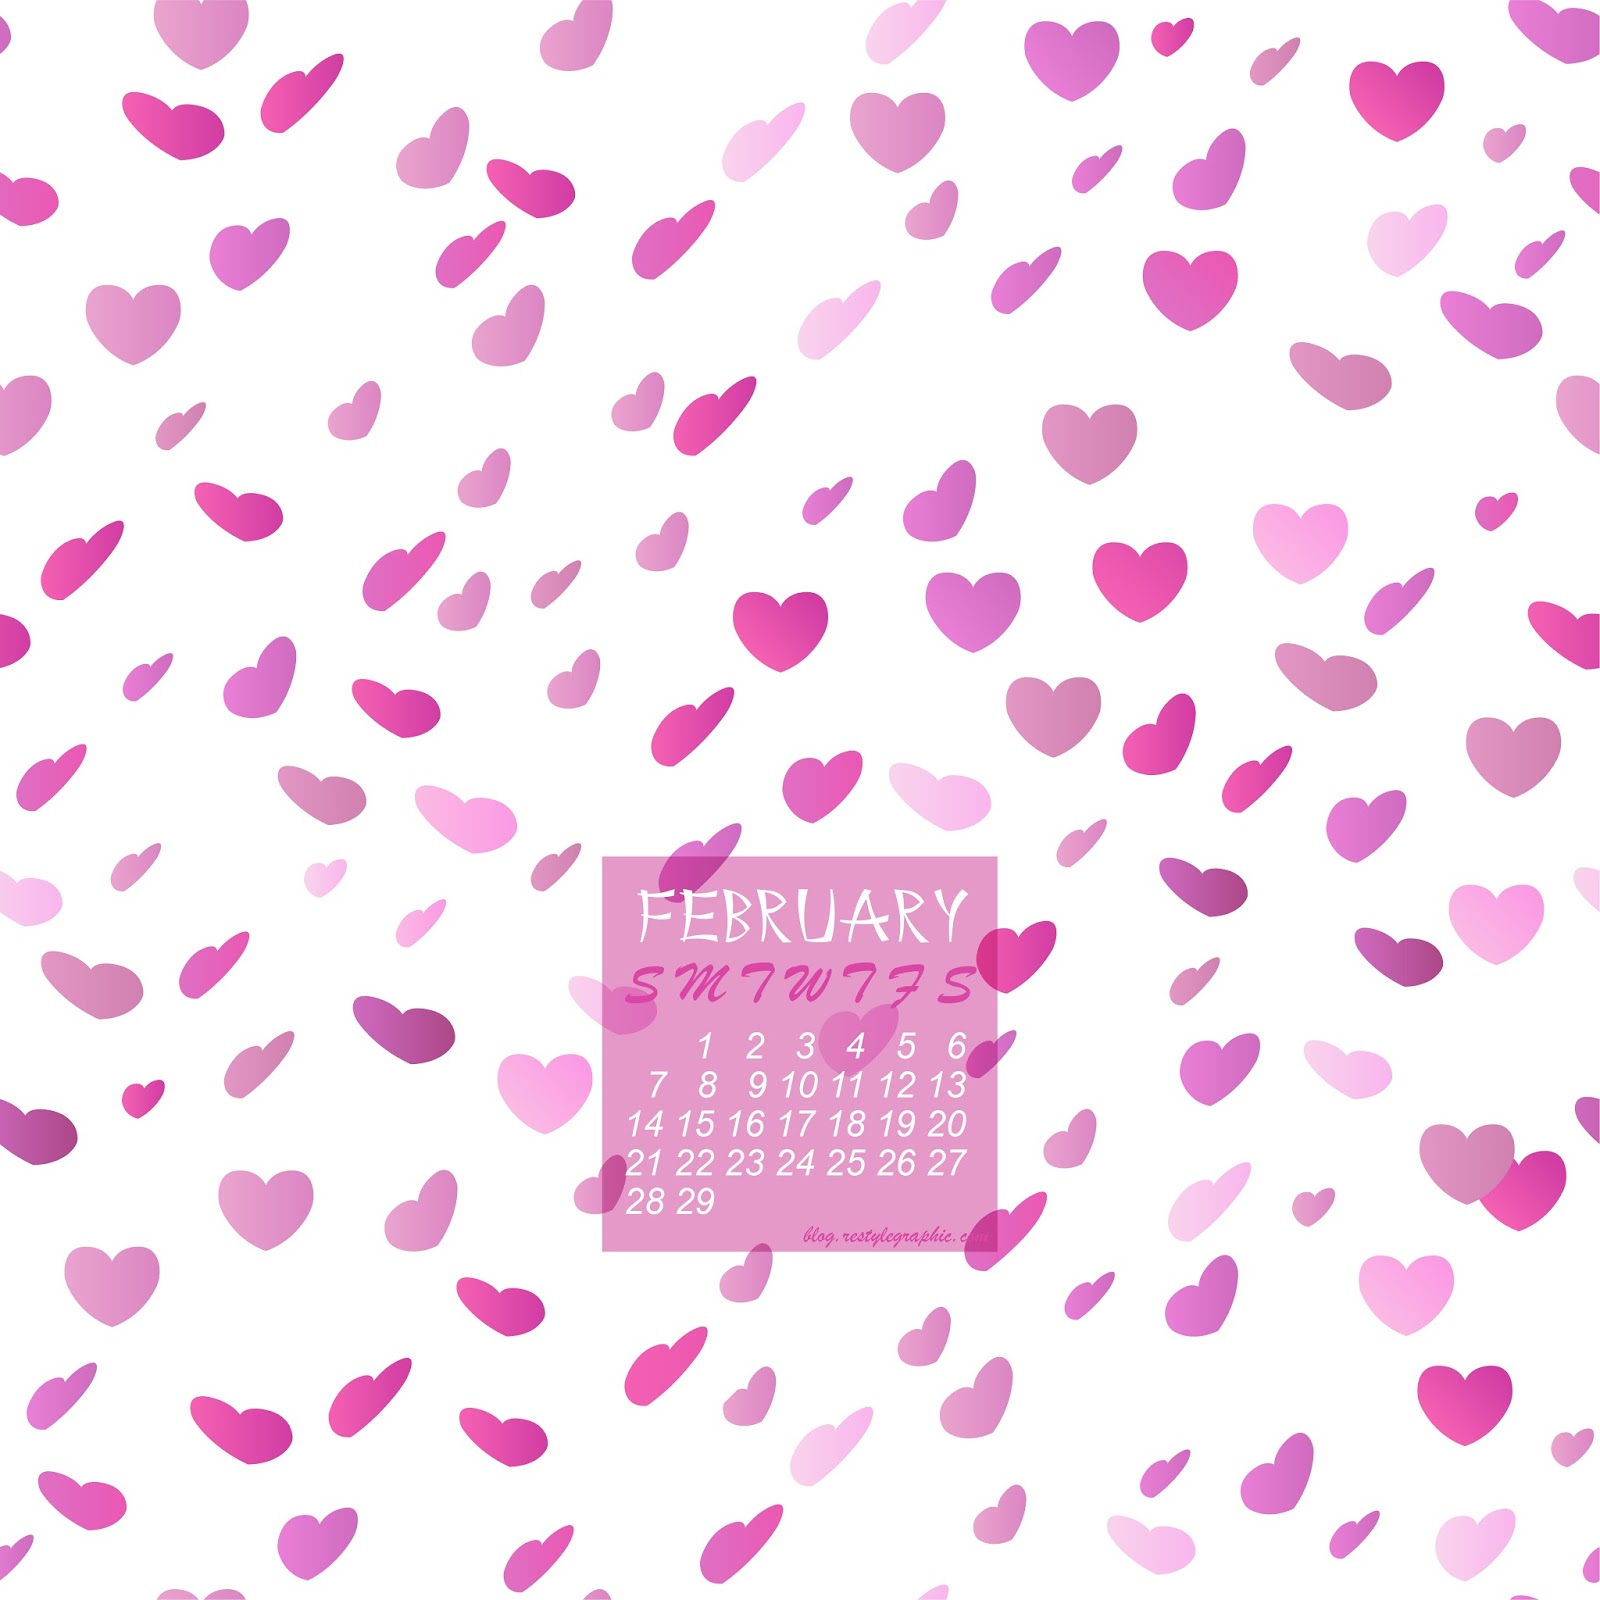 ReStyleGraphic Blog: Enjoy my Valentines Day desktop wallpaper ...